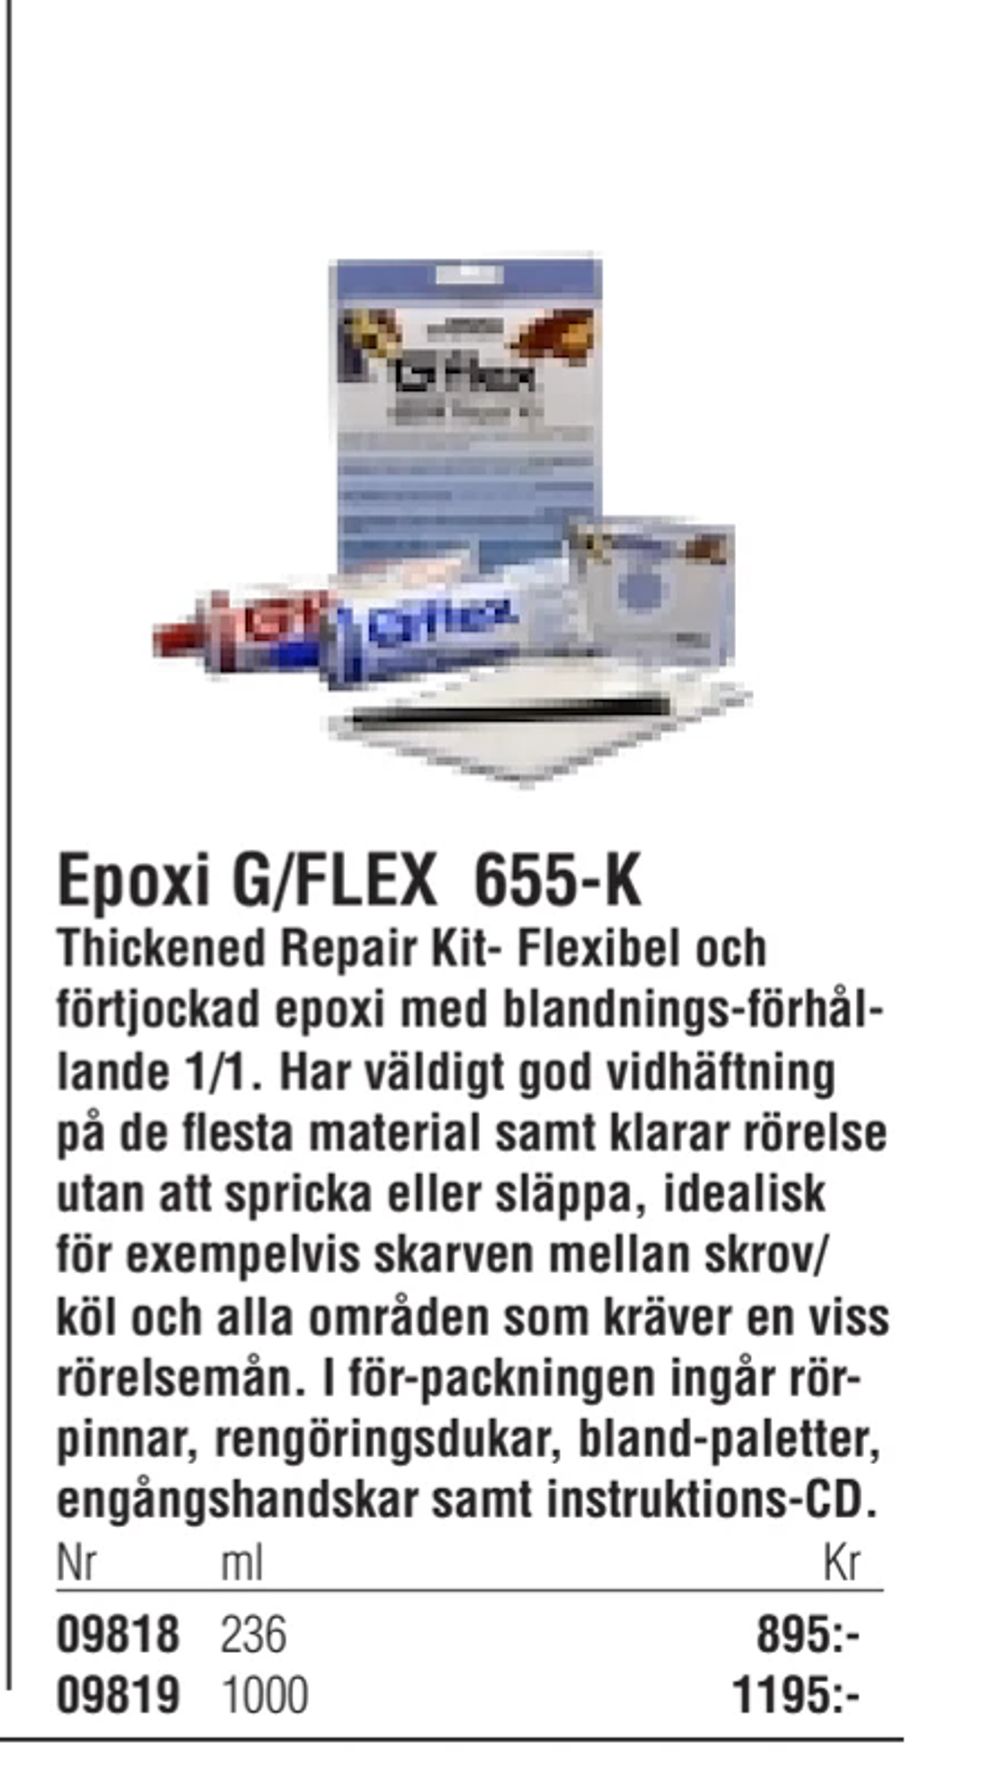 Erbjudanden på Epoxi G/FLEX 655-K från Erlandsons Brygga för 895 kr